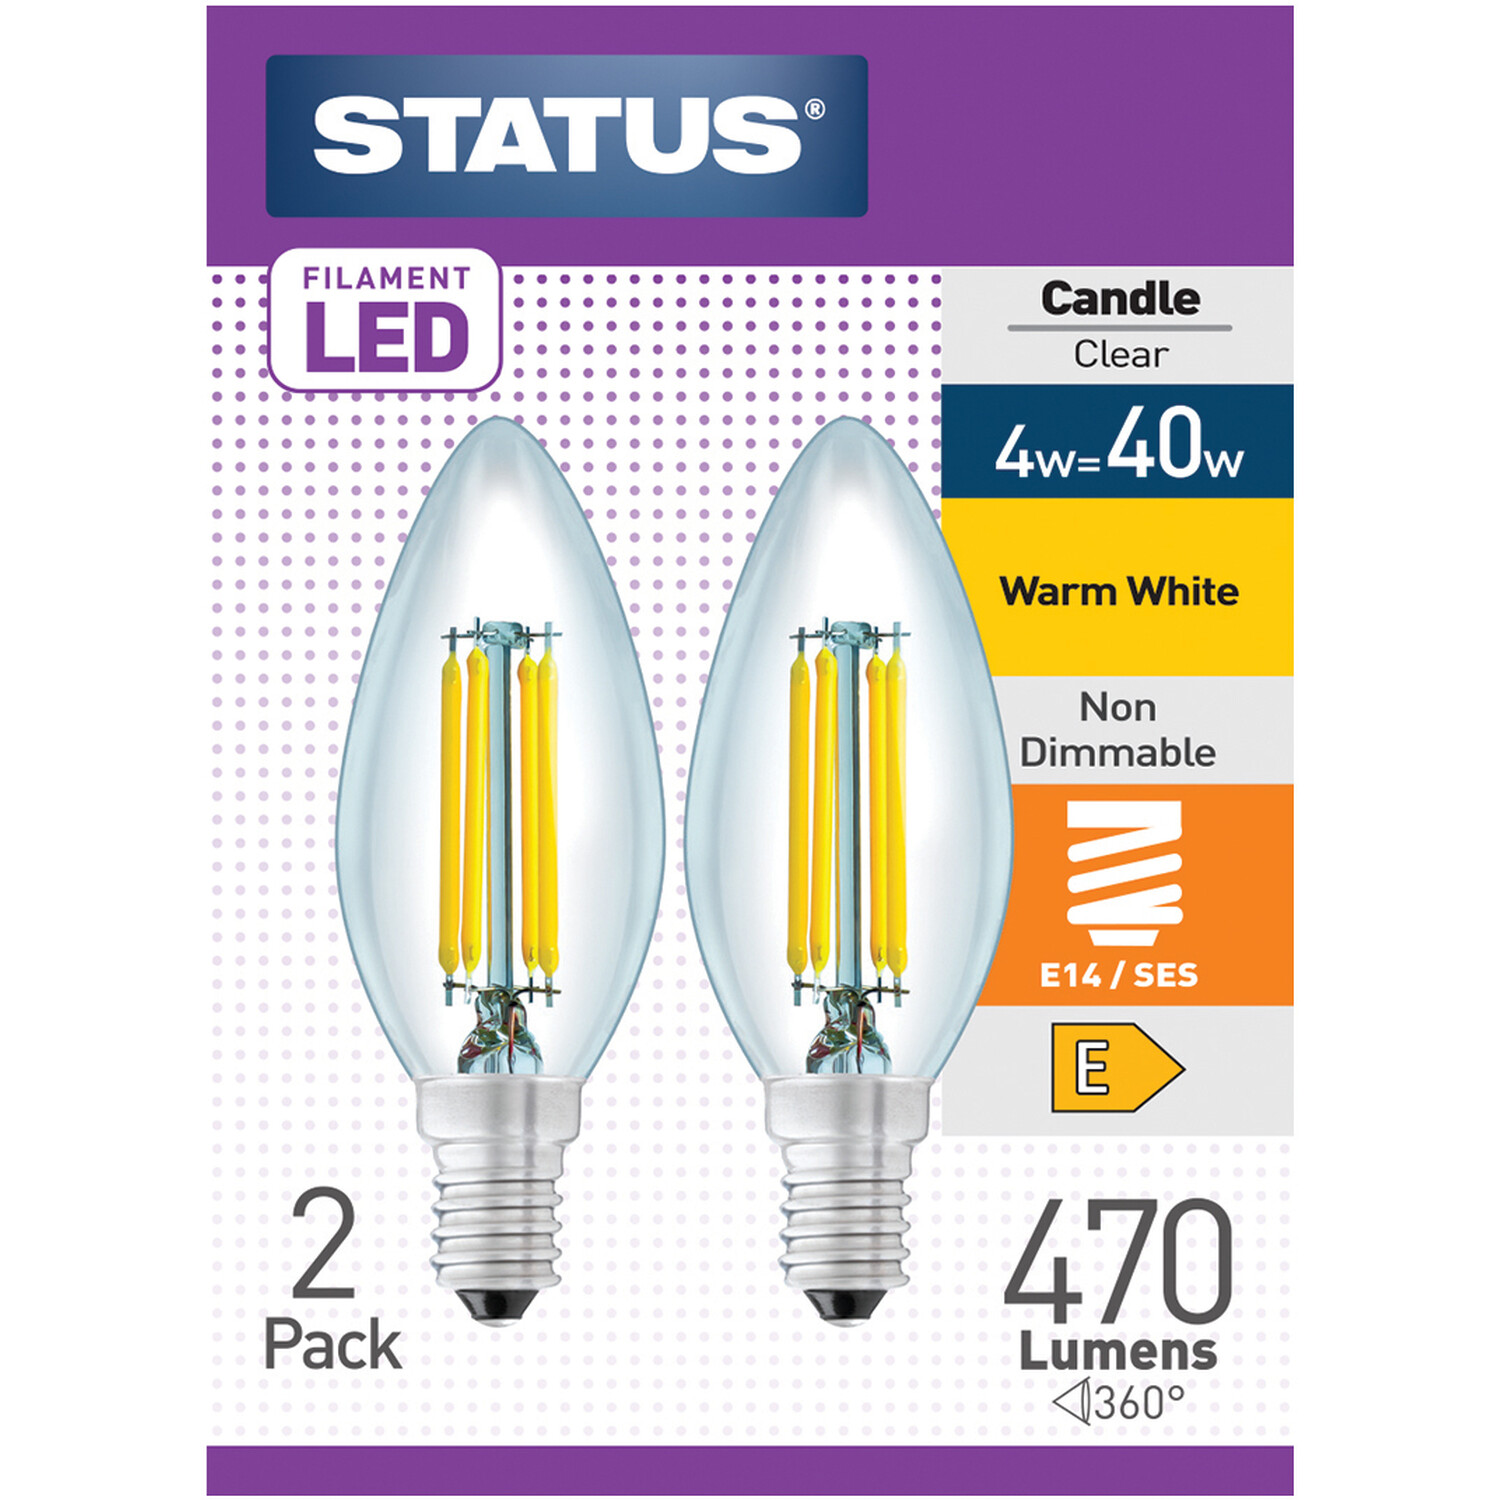 Status 2 Pack E14/SES Filament LED 4W Candle Light Bulb Image 1